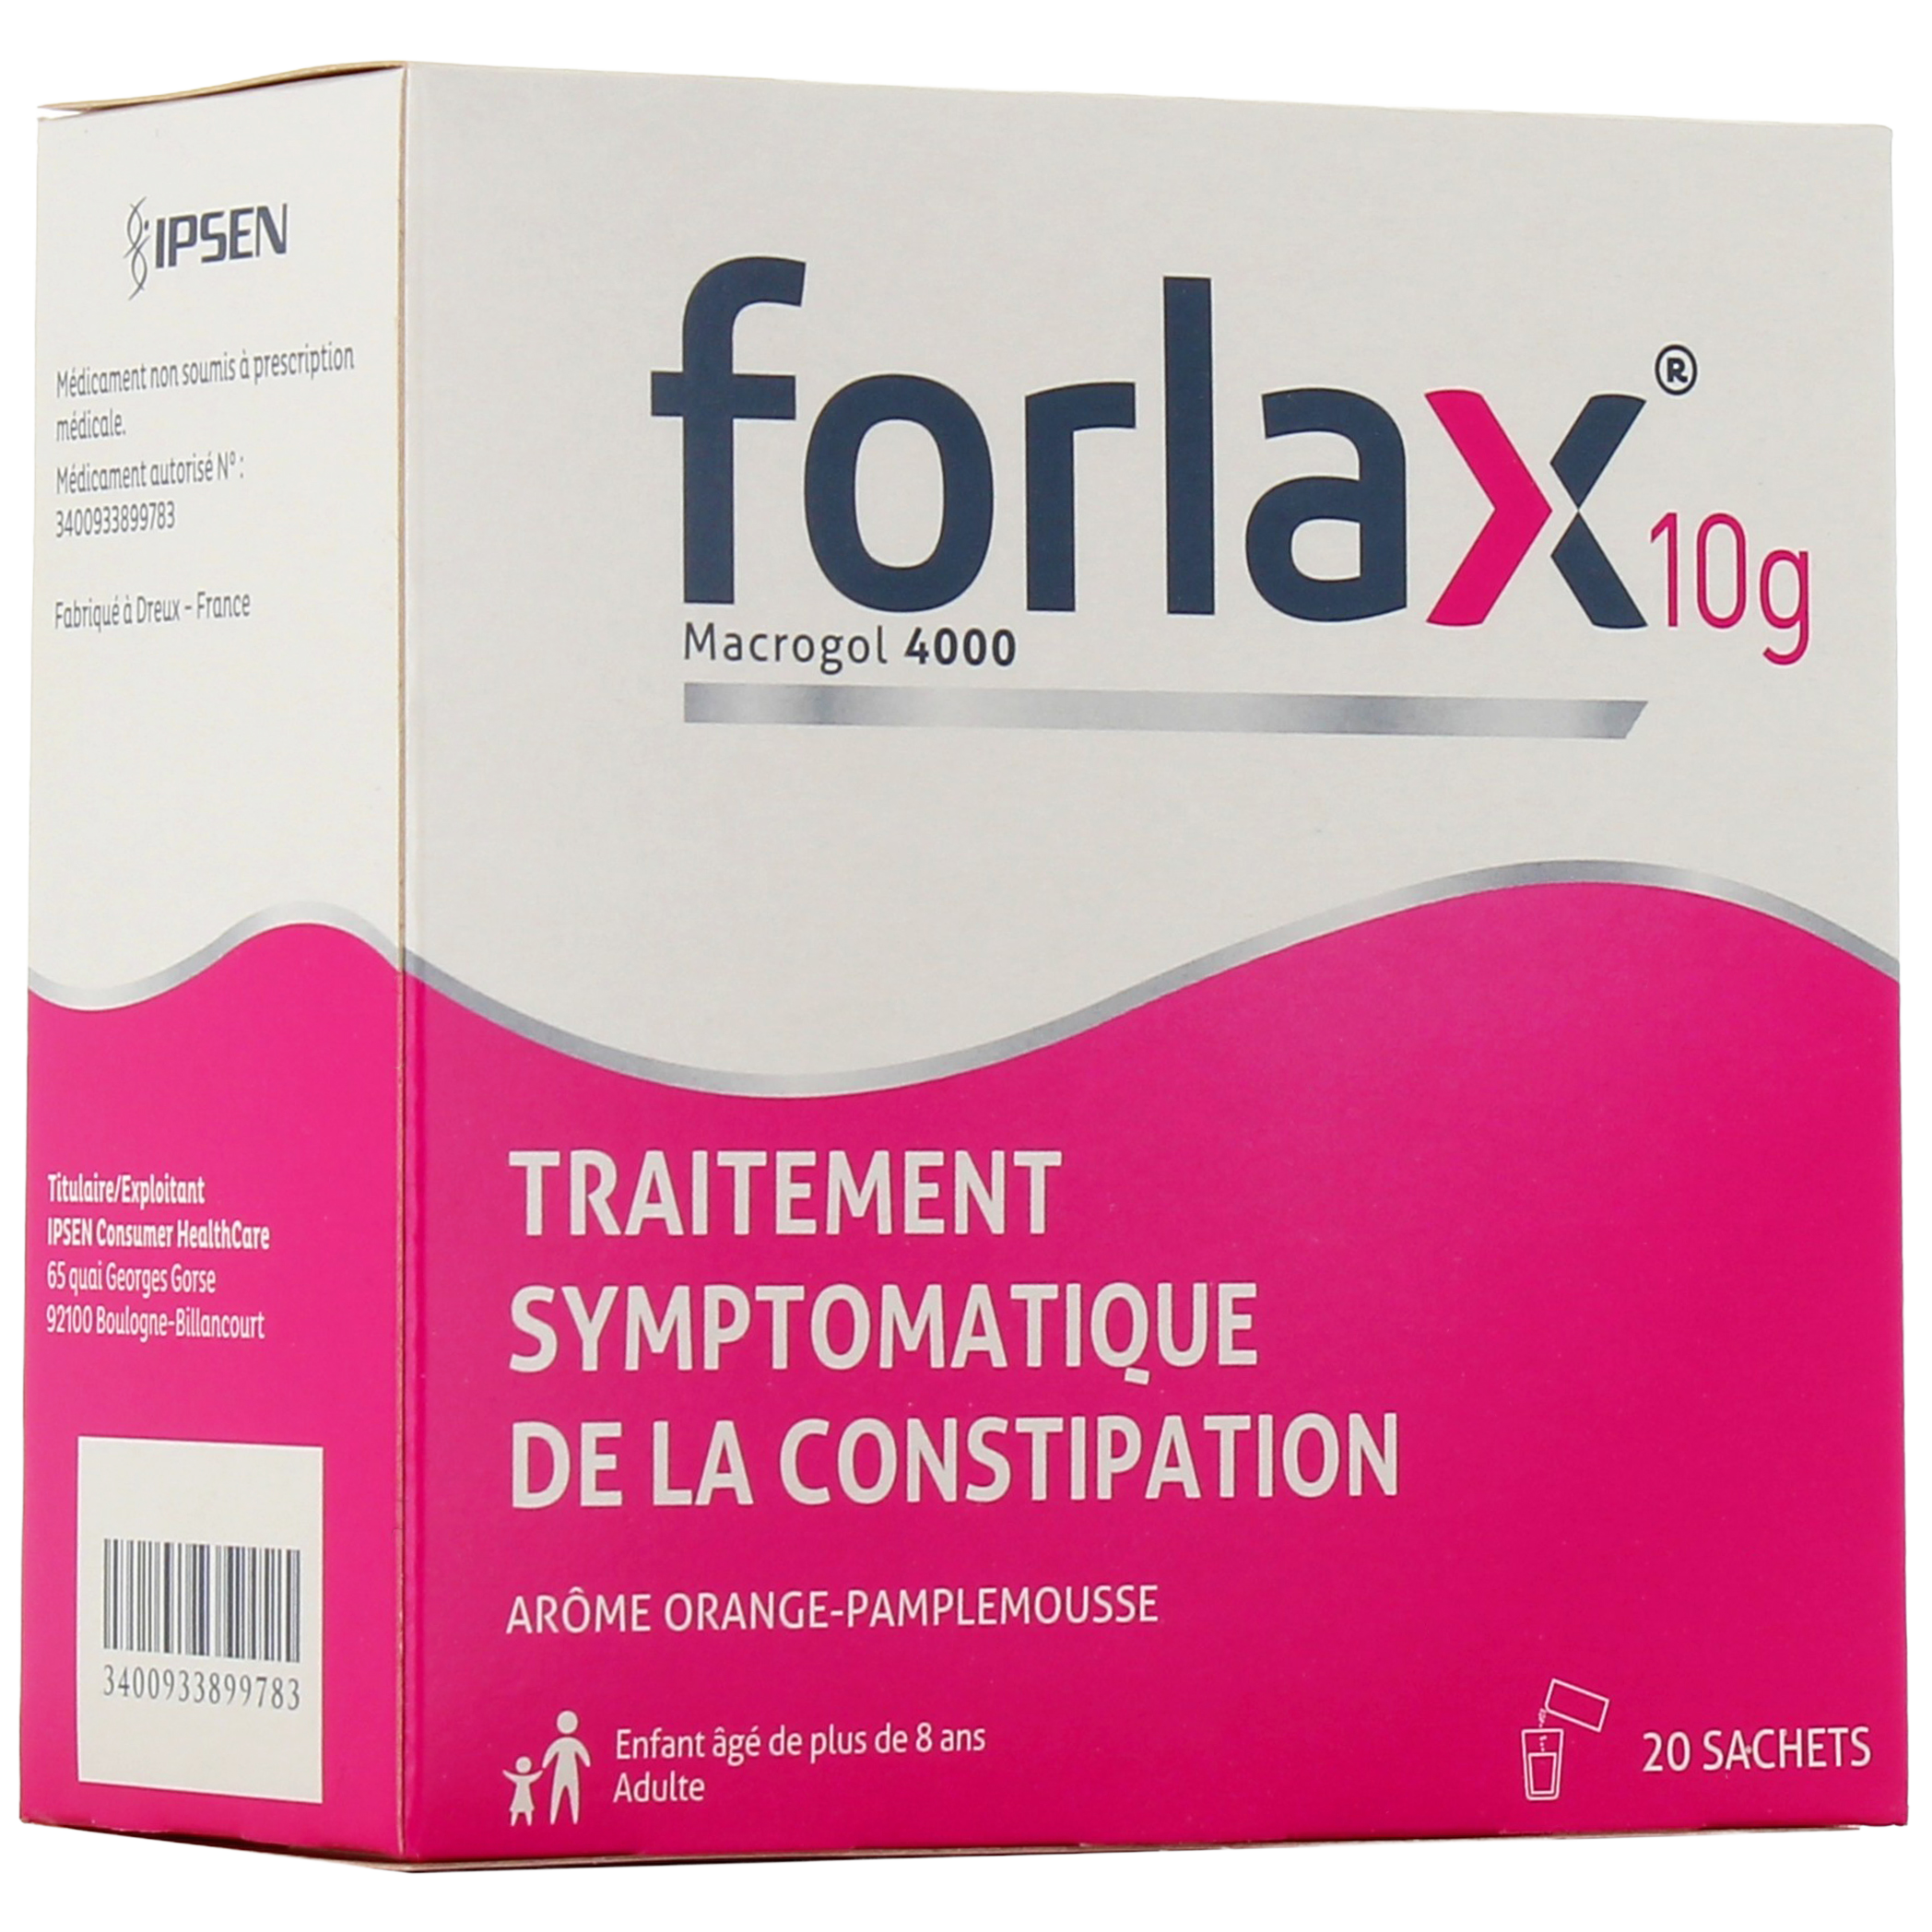 Forlax : Médicament Adulte & Enfant contre la Constipation